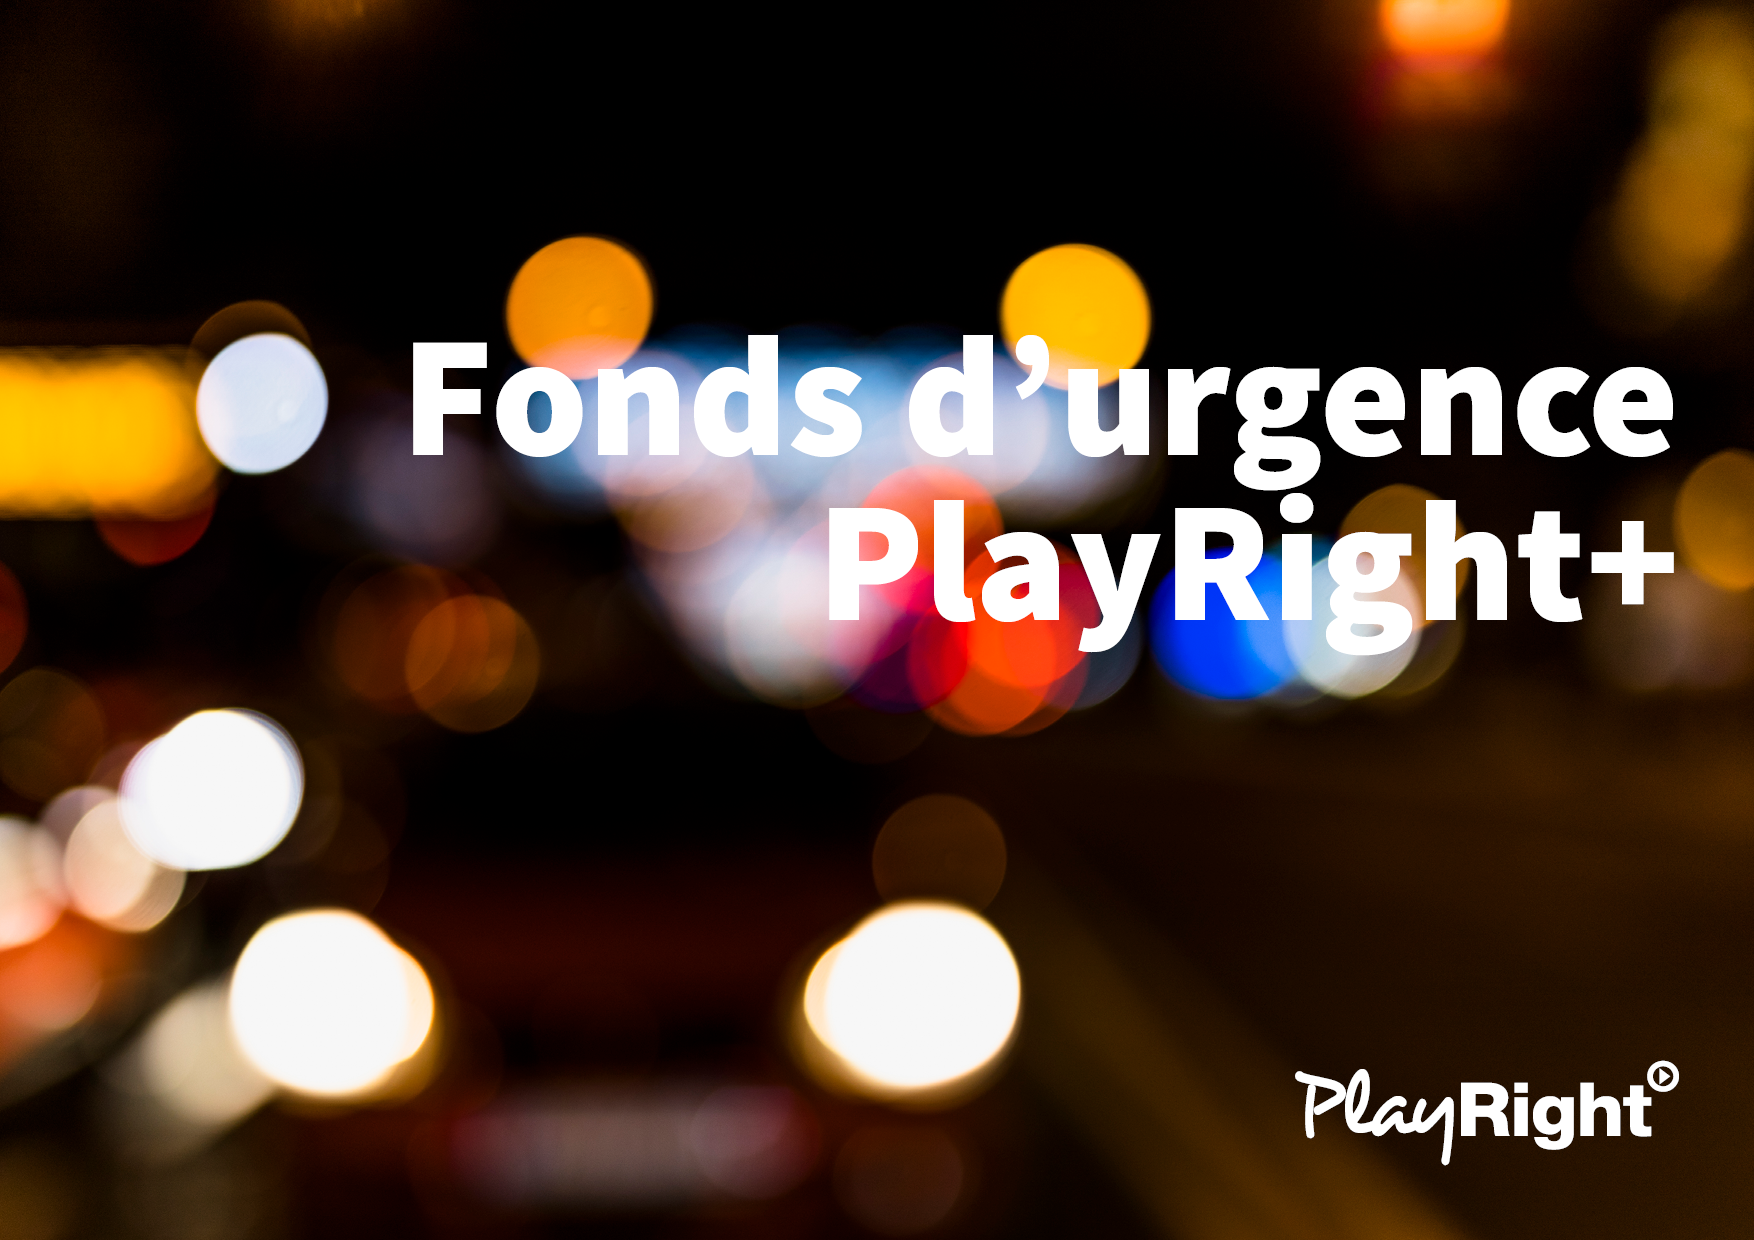 Fonds d’urgence pour artistes: PlayRight joue les prolongations